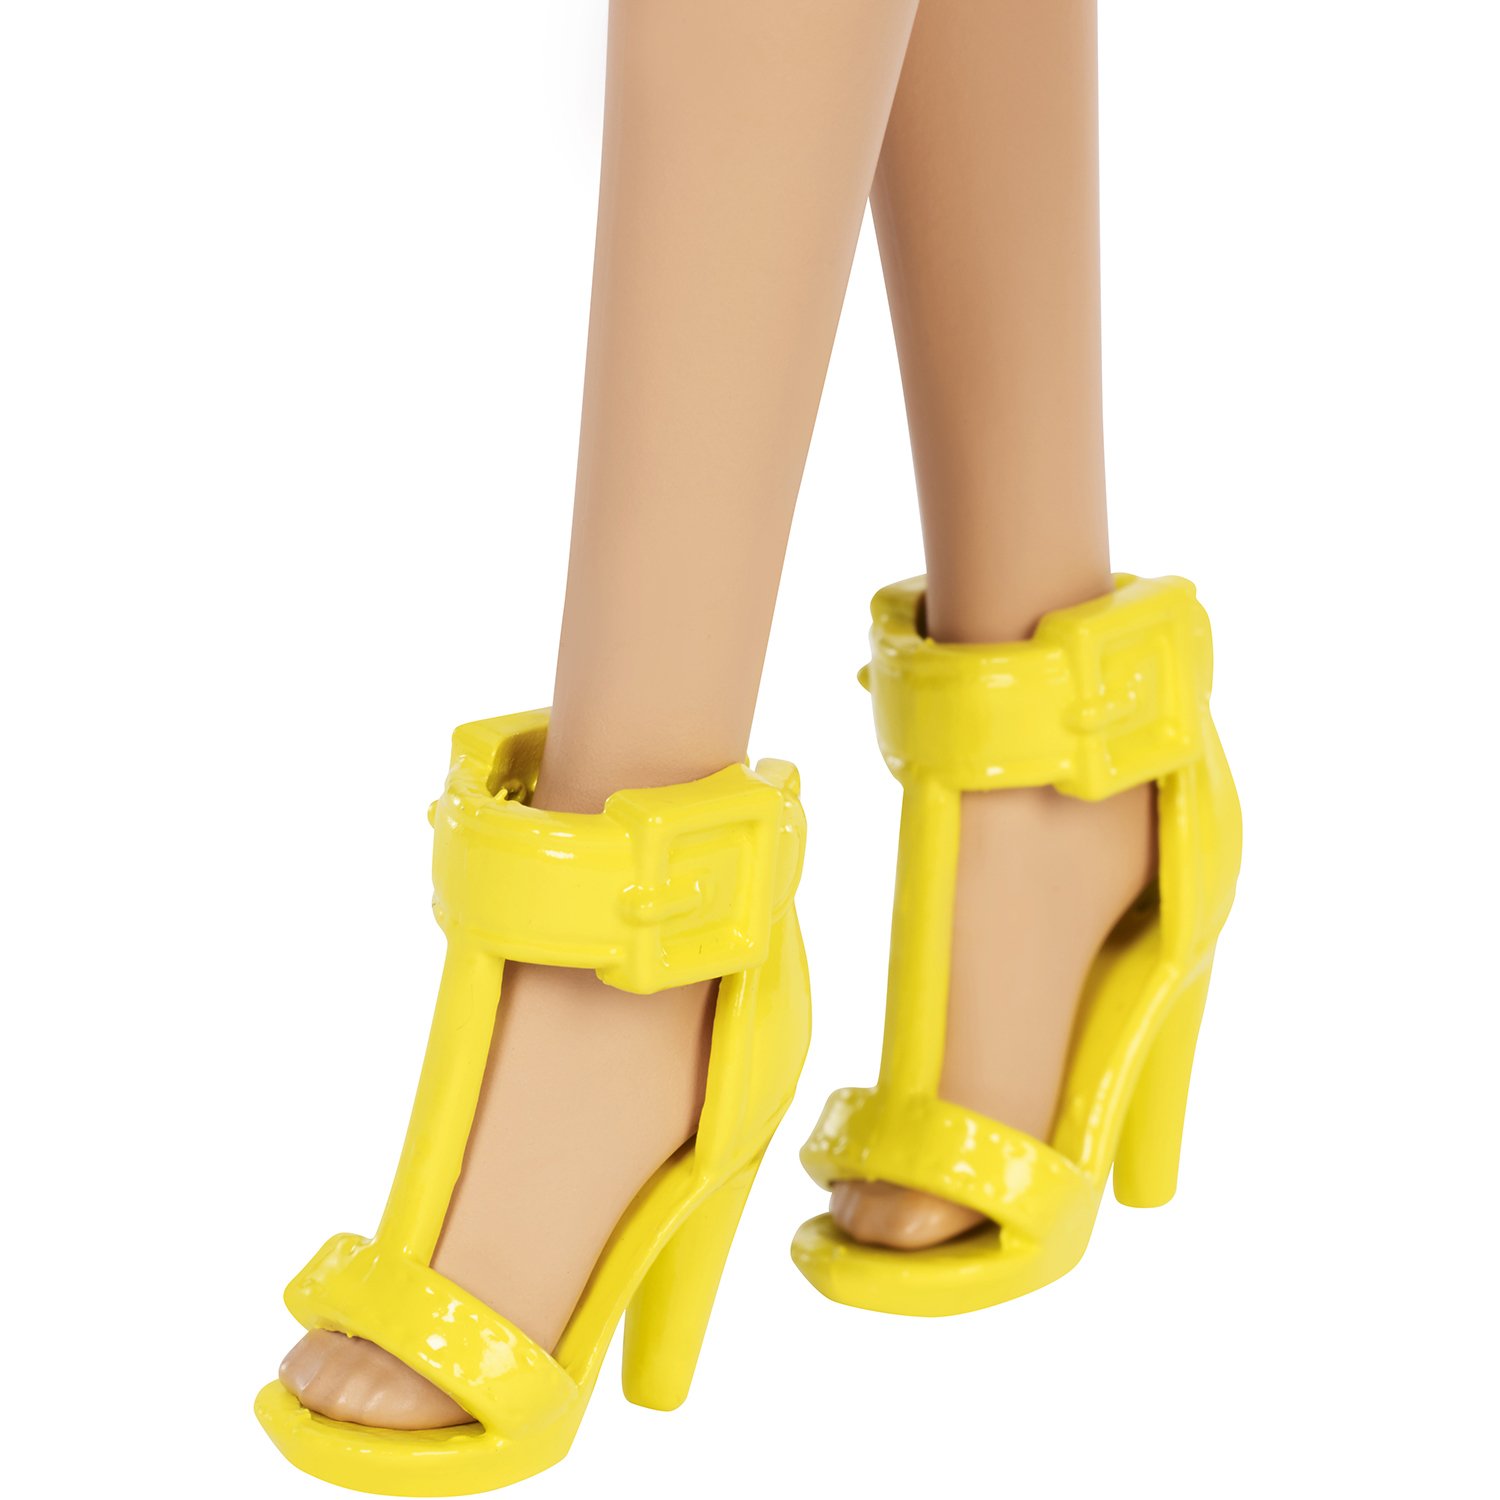 Кукла Barbie Игра с модой со светлыми волосами, 29 см, FXL44